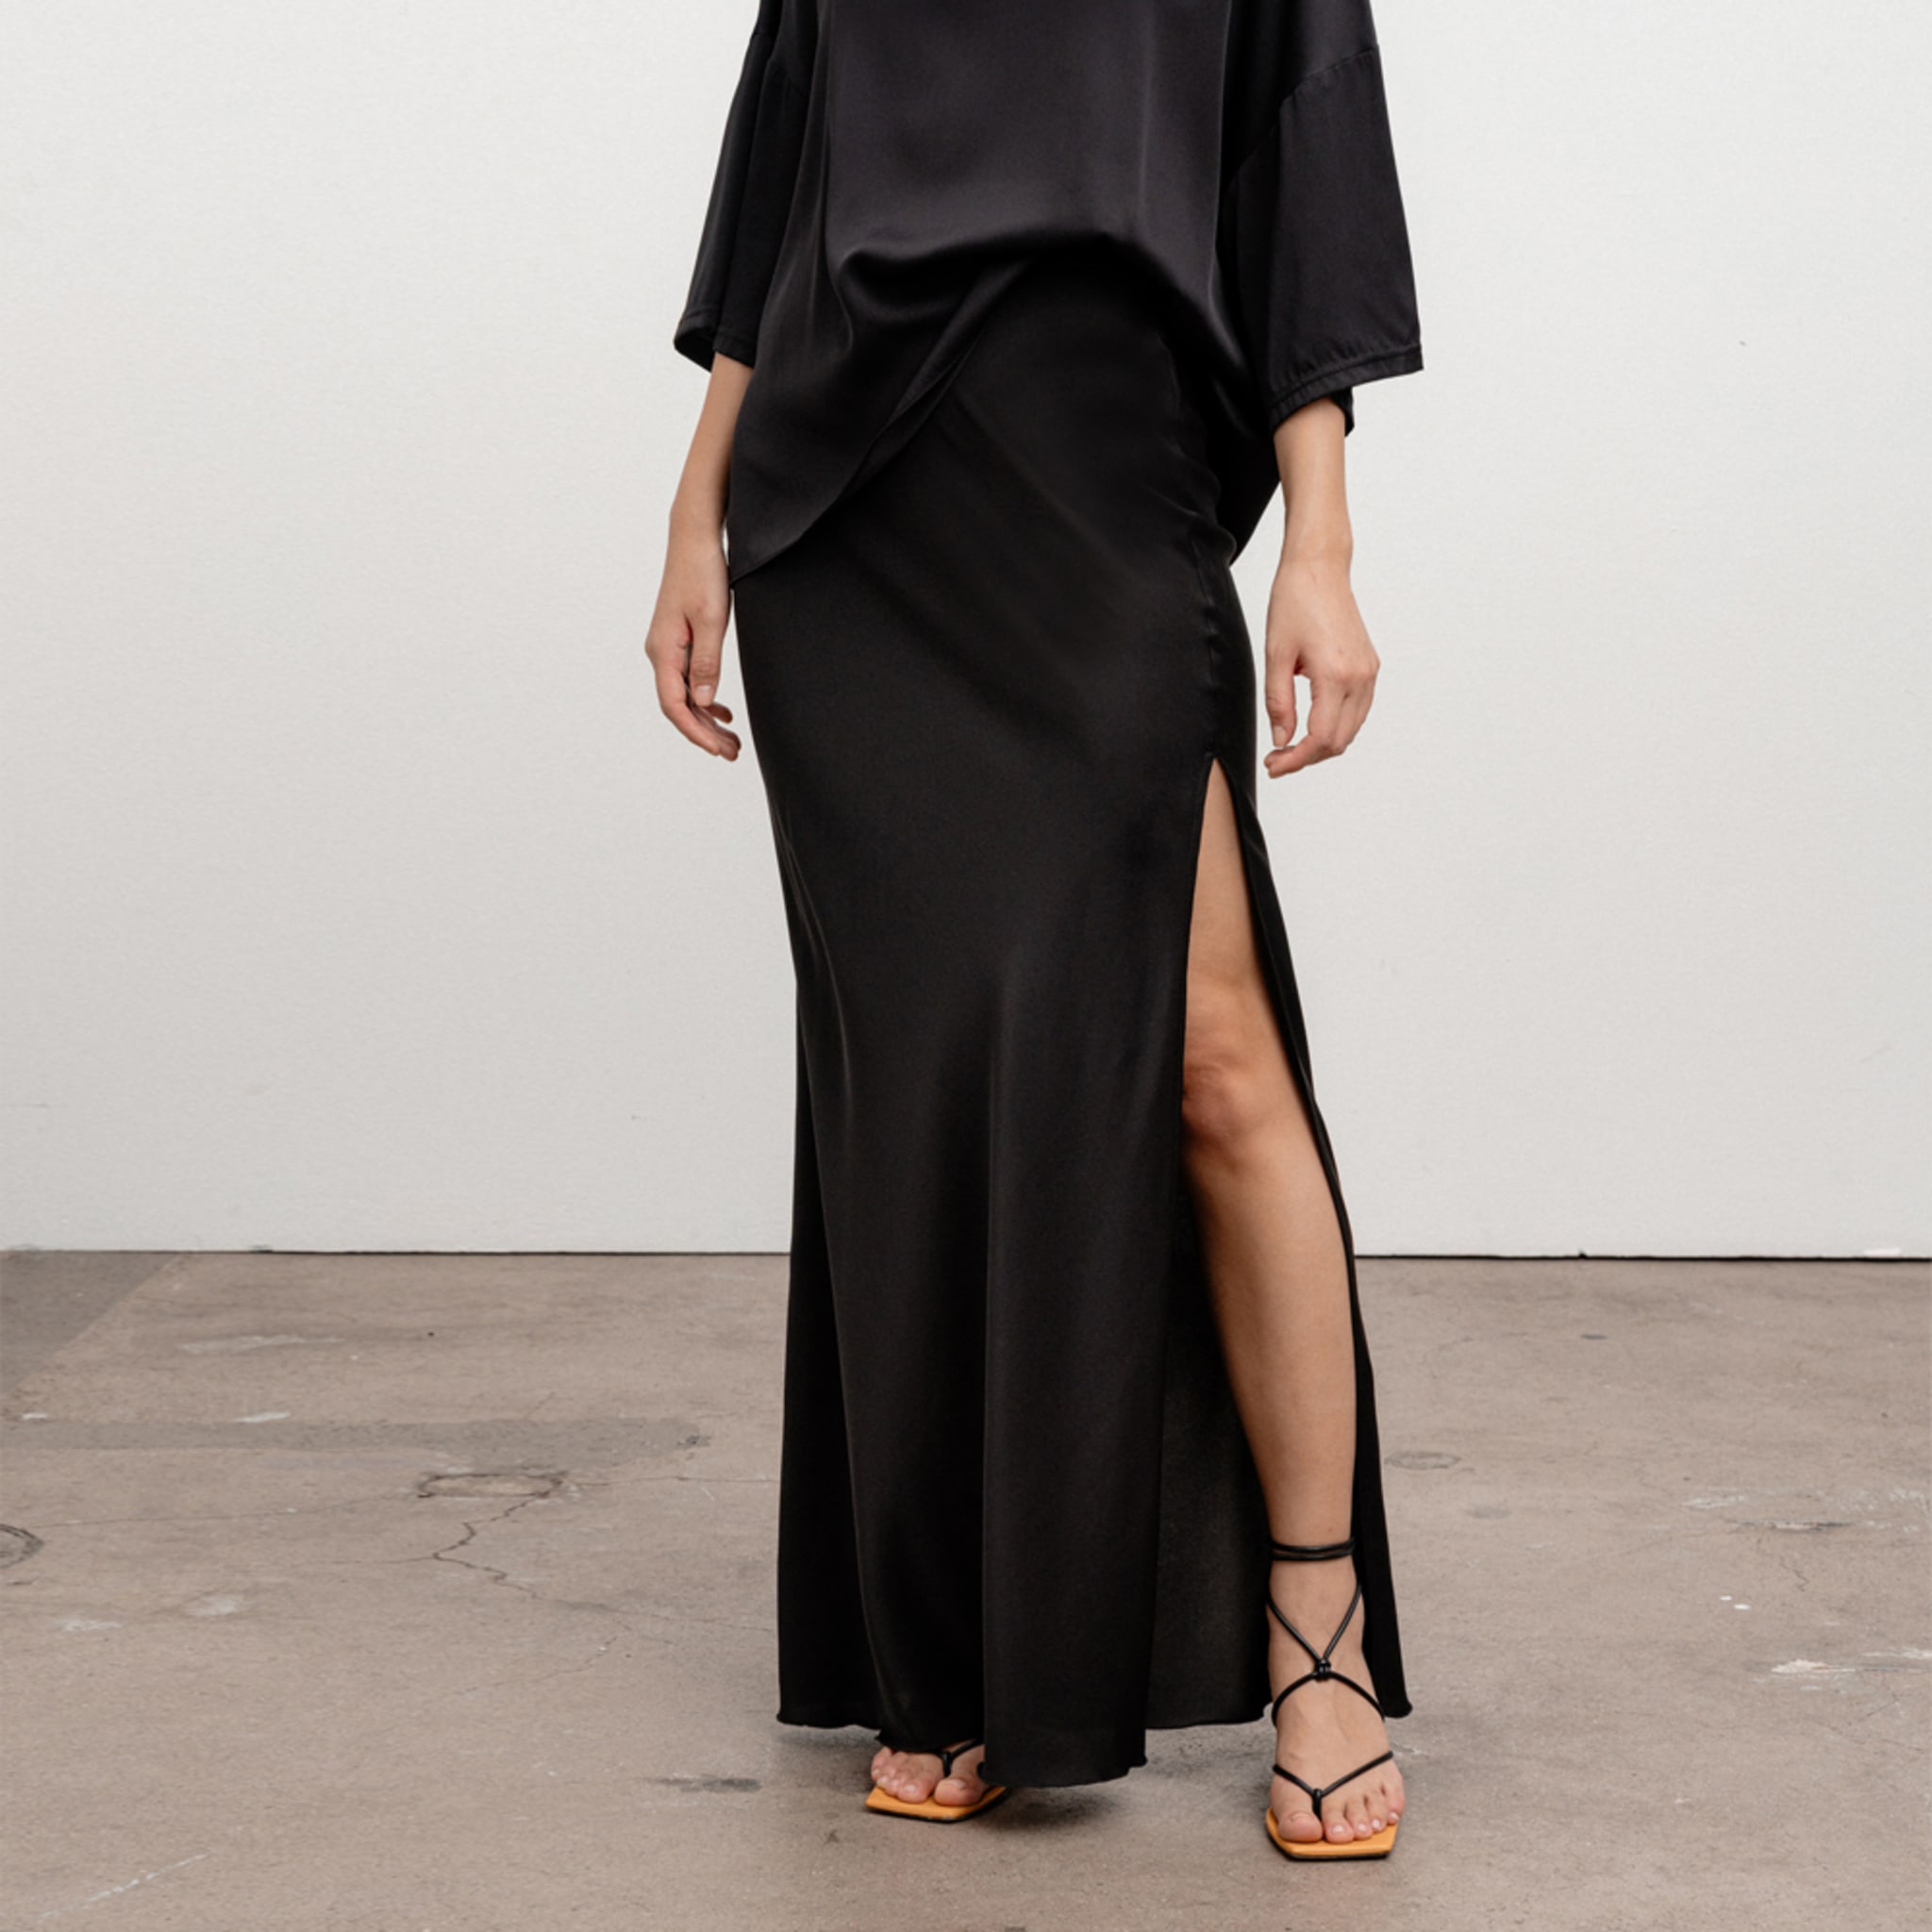 Hana Long Skirt, black